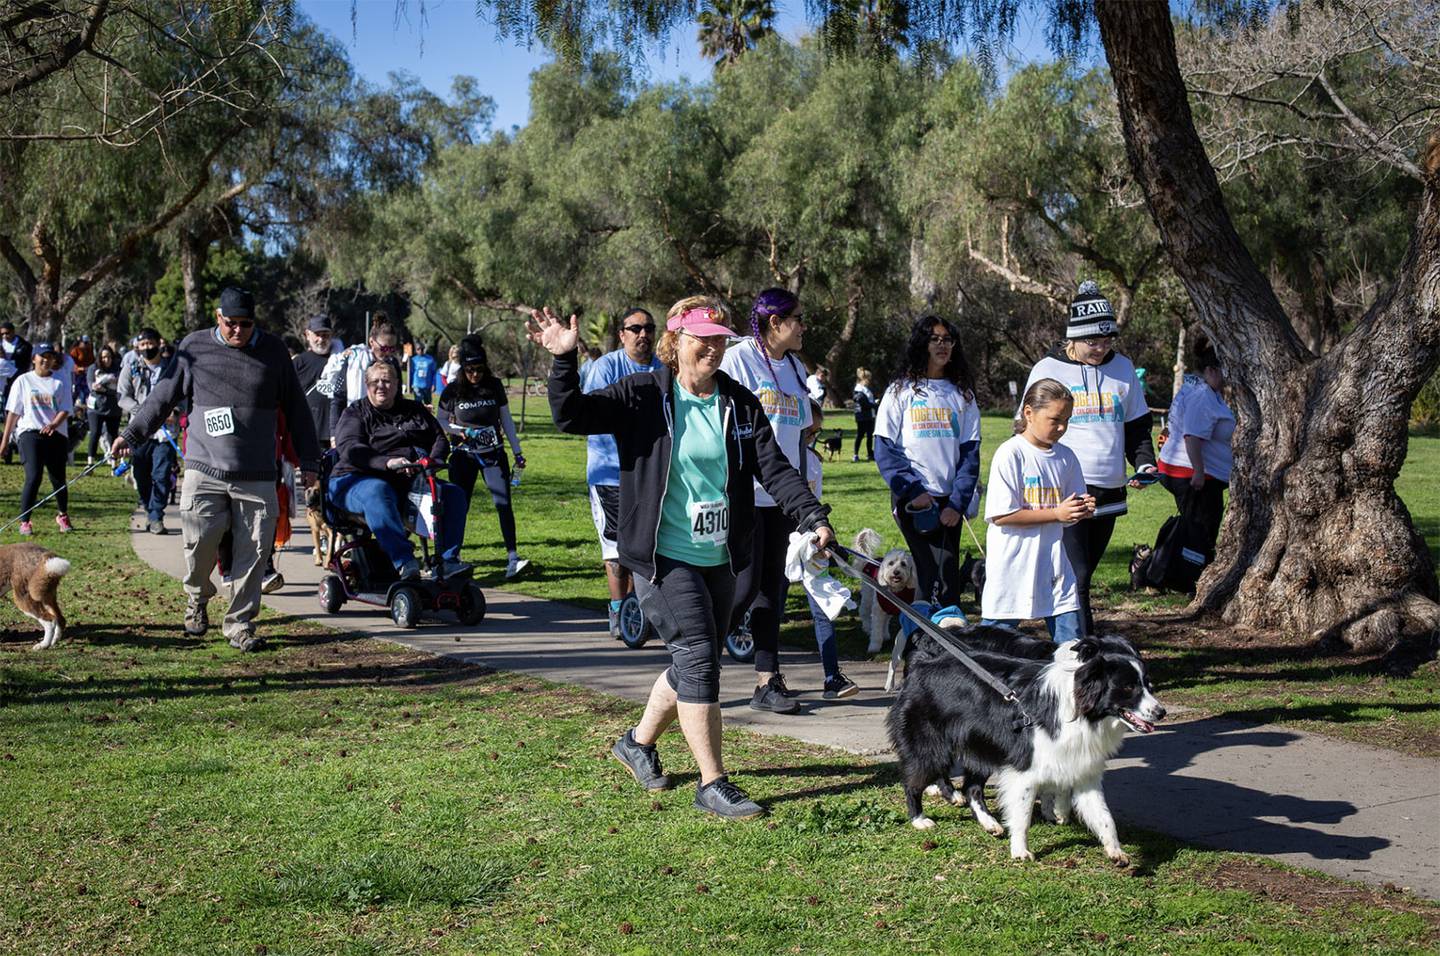 La caminata es el próximo 16 de marzo en el parque Kit Carson ubicado en el área de Escondido al Norte del condado de San Diego.